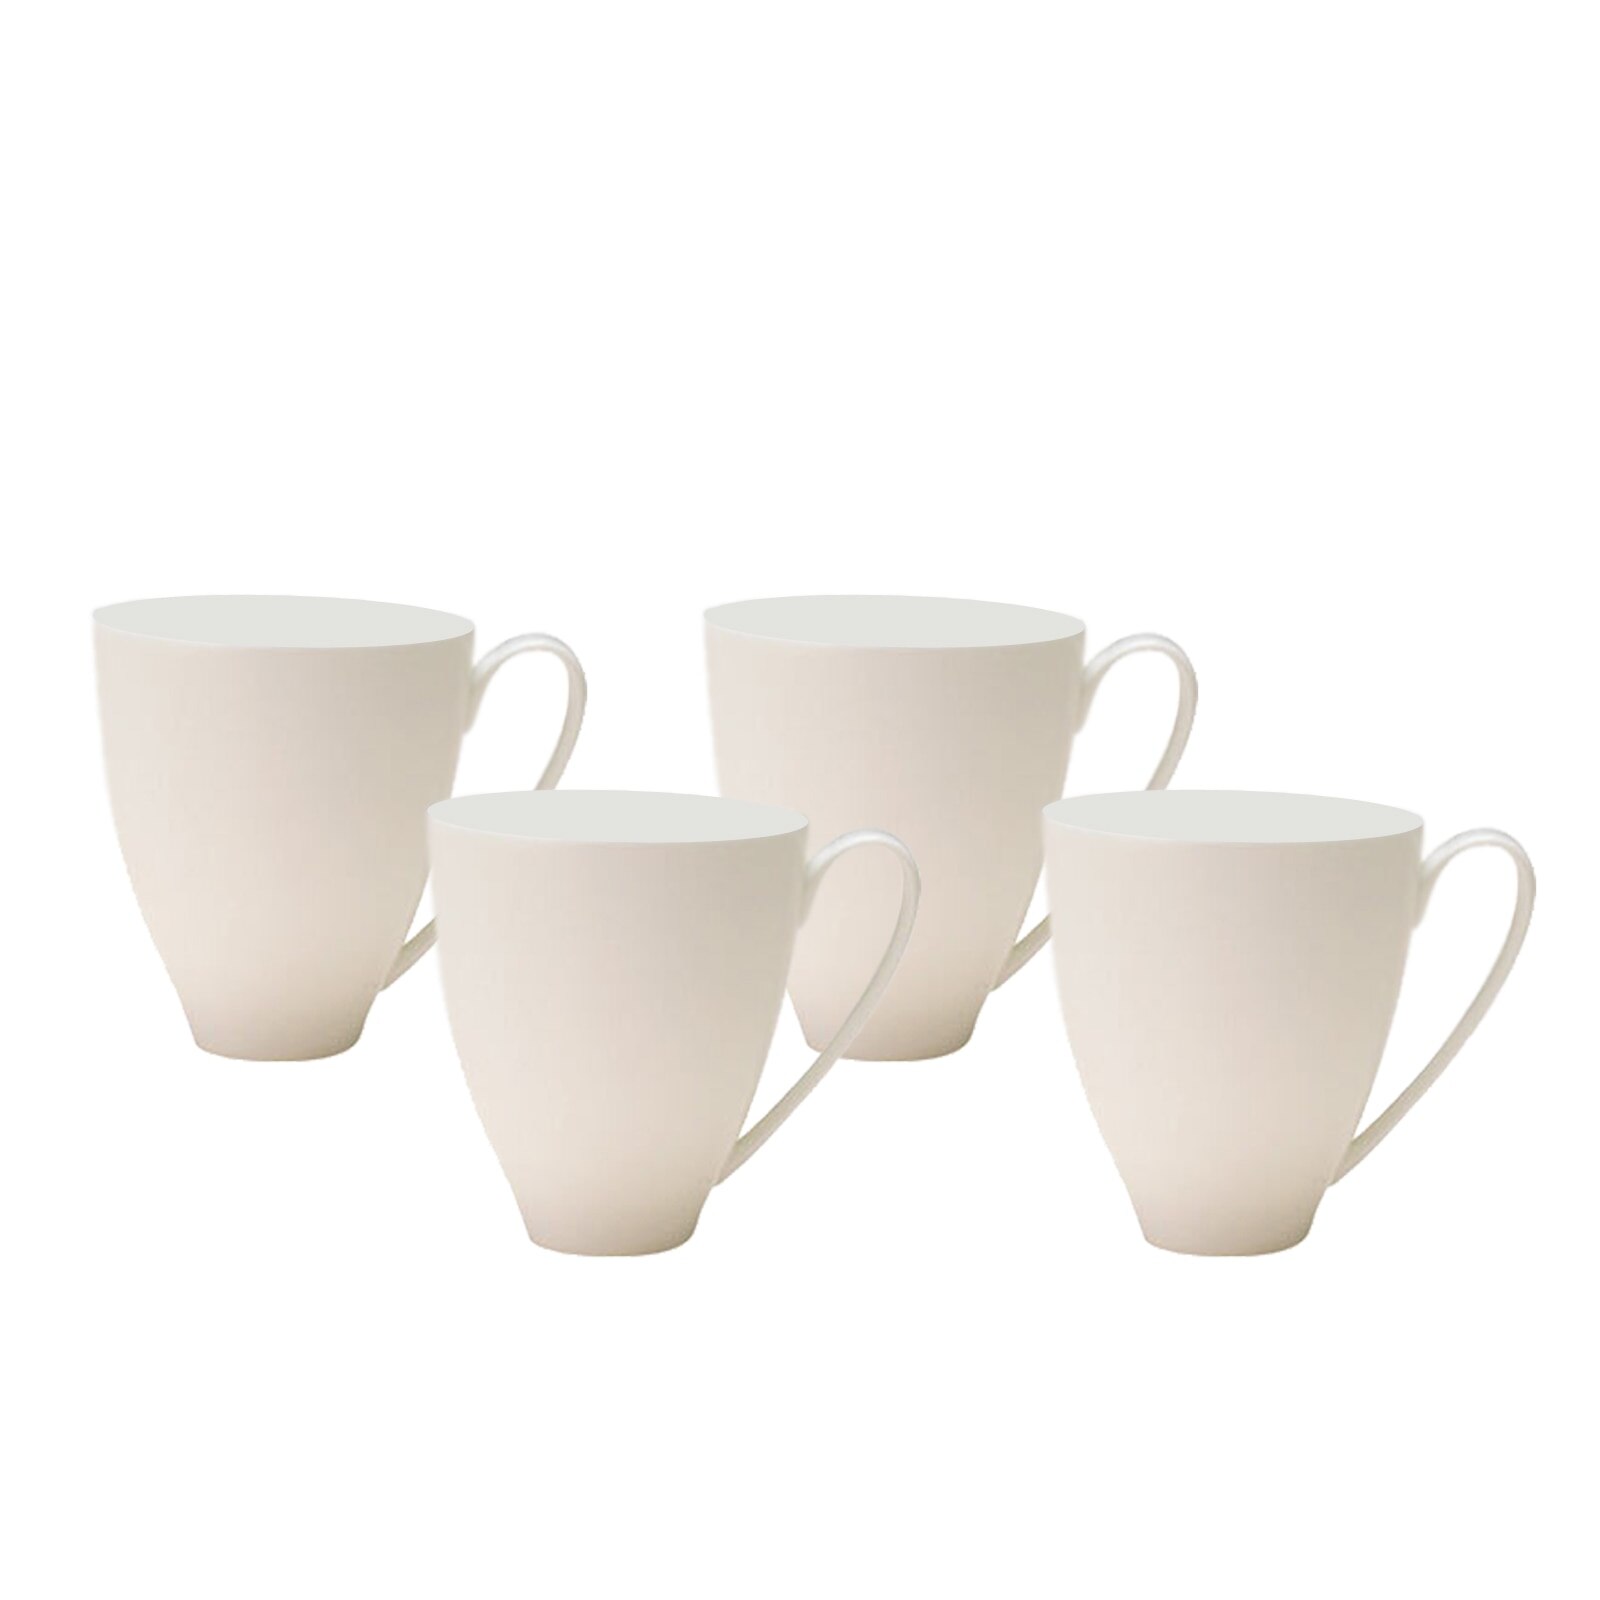 China Set of 4 Mugs